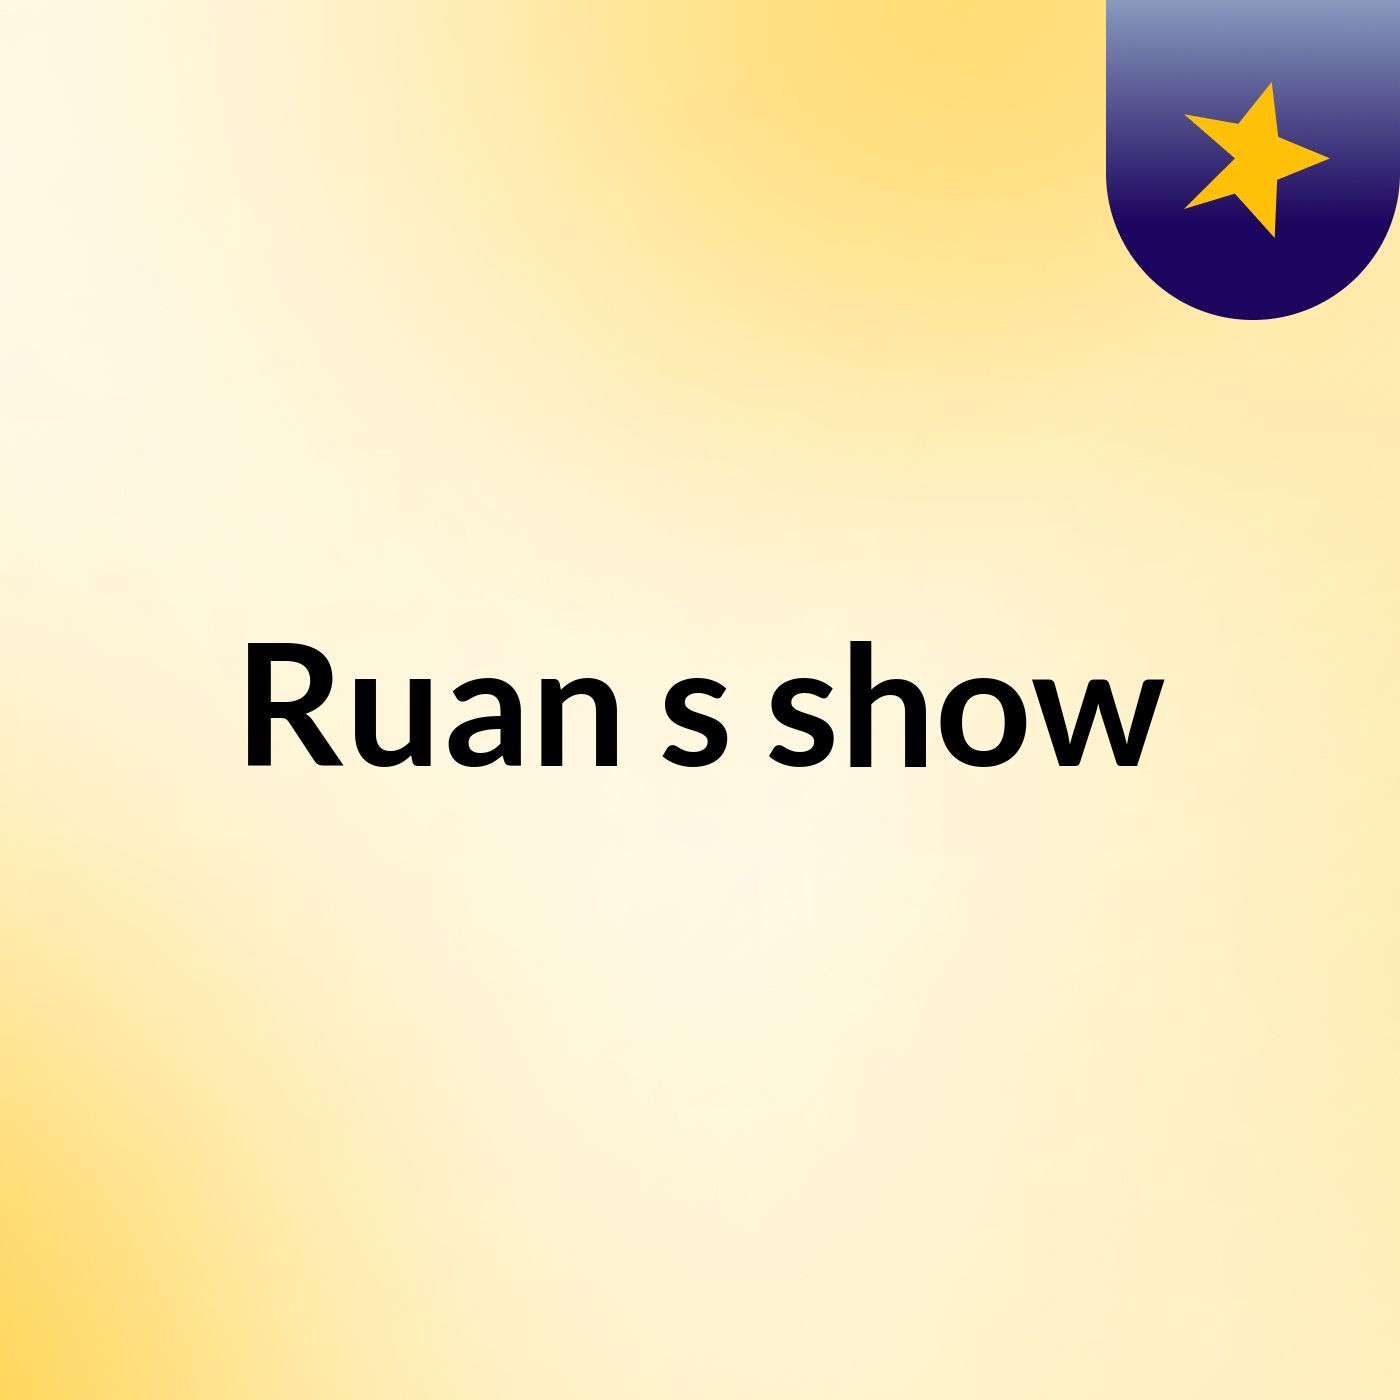 Ruan's show